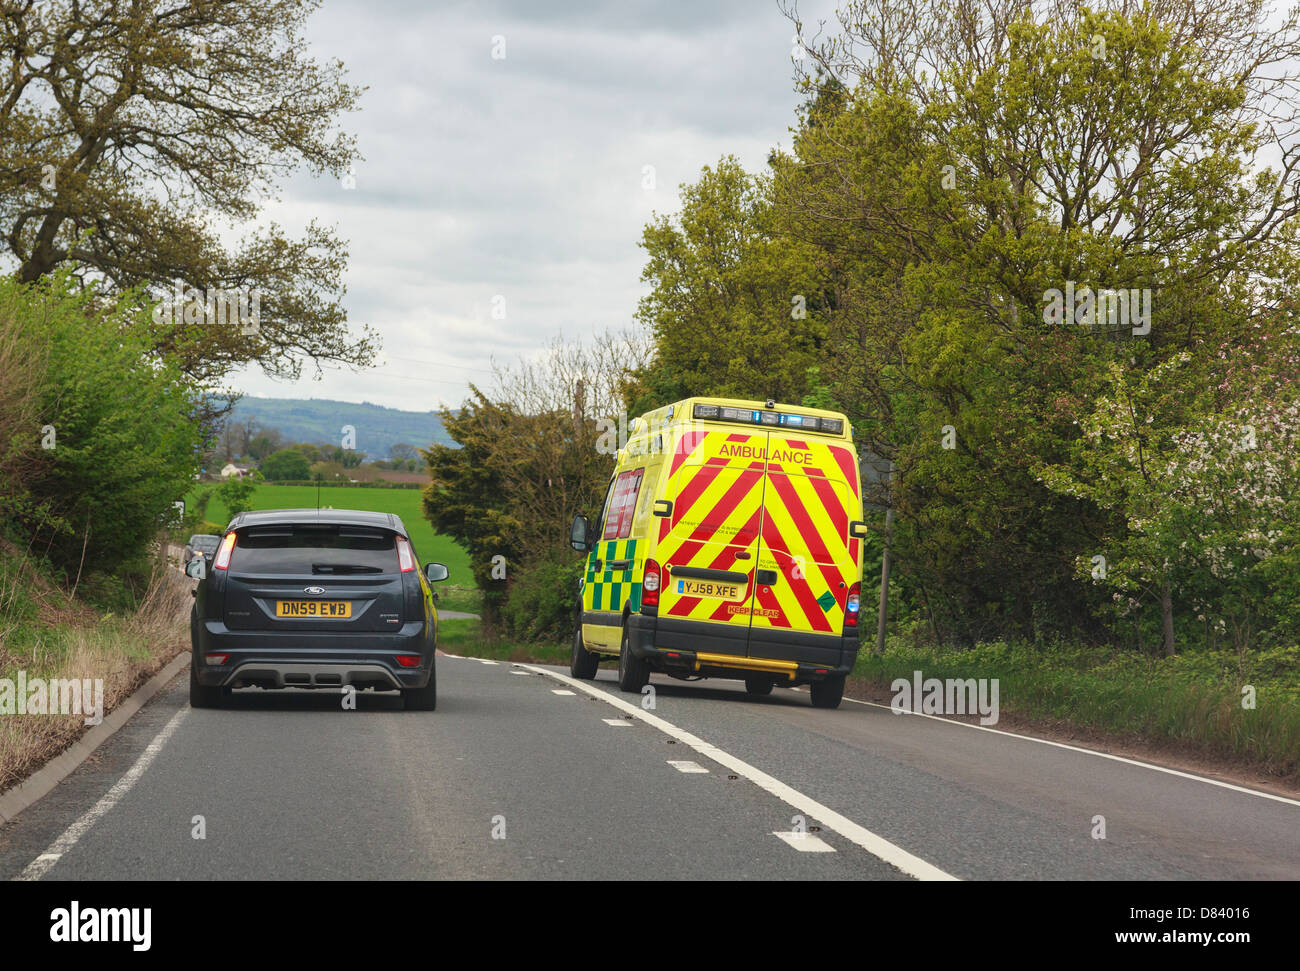 Ver a través de un parabrisas de una ambulancia con las luces azules destellando precipitándose a una emergencia adelantar un coche junto a5 road. UK Foto de stock